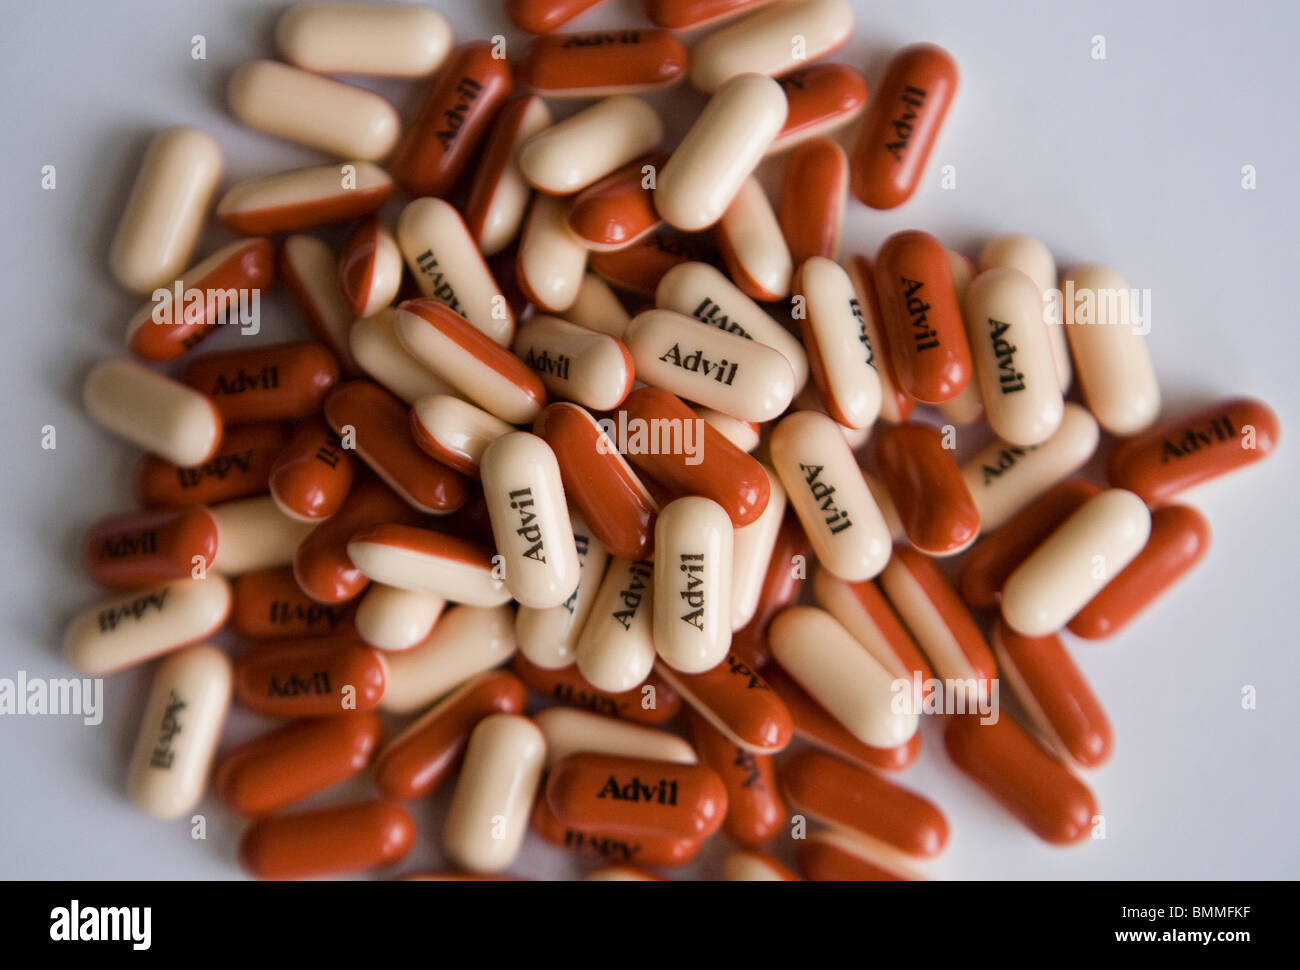 Ibuprofen-Verpackung und Pillen. Stockfoto